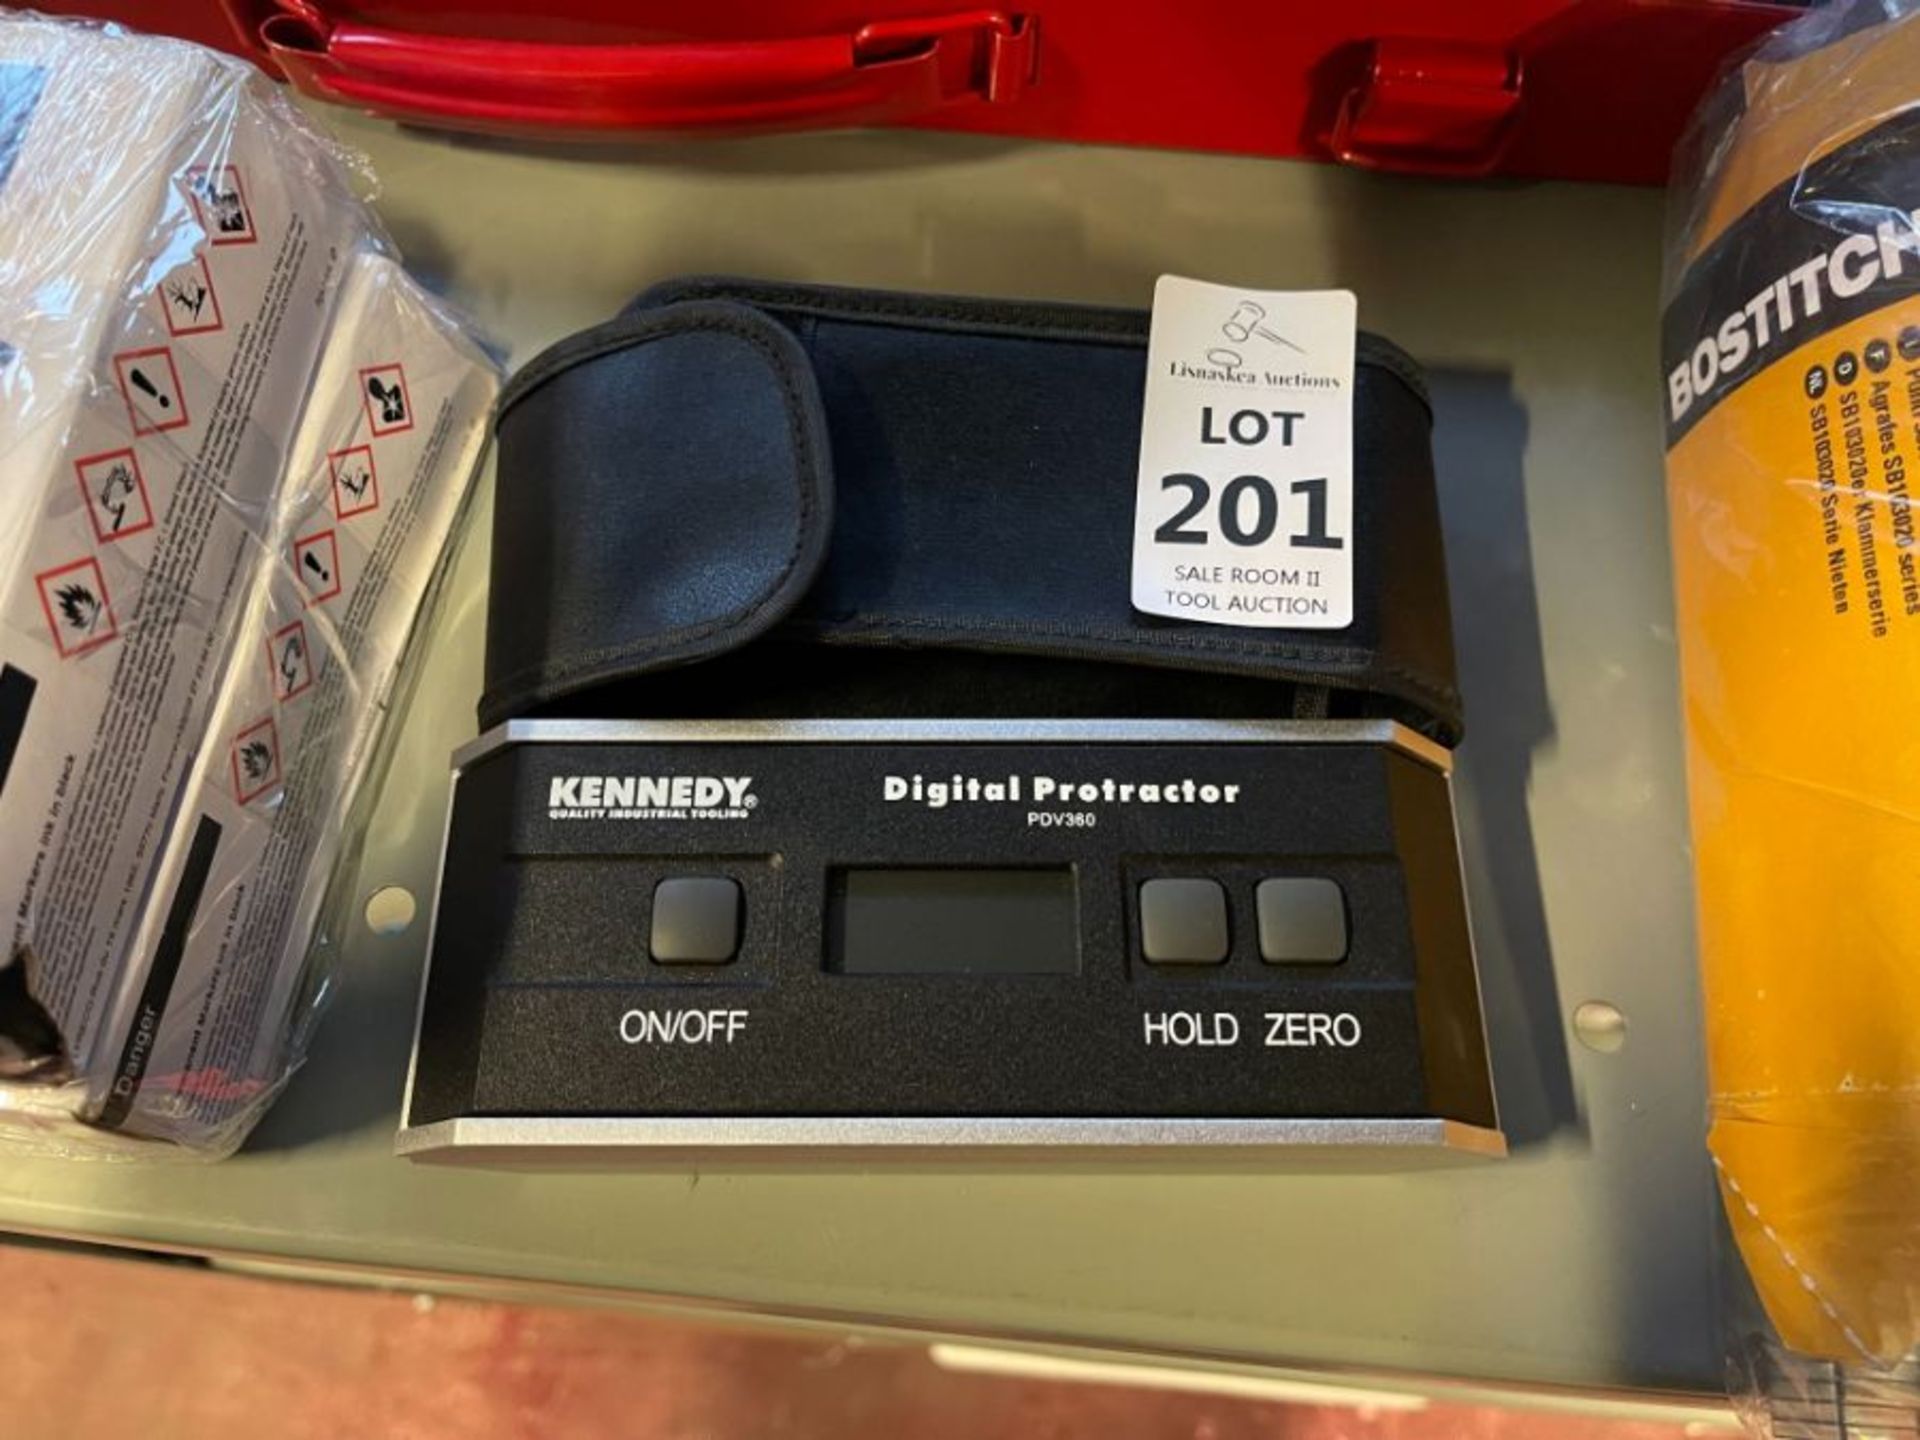 KENNEDY DIGITAL PROTRACTOR - PDV360